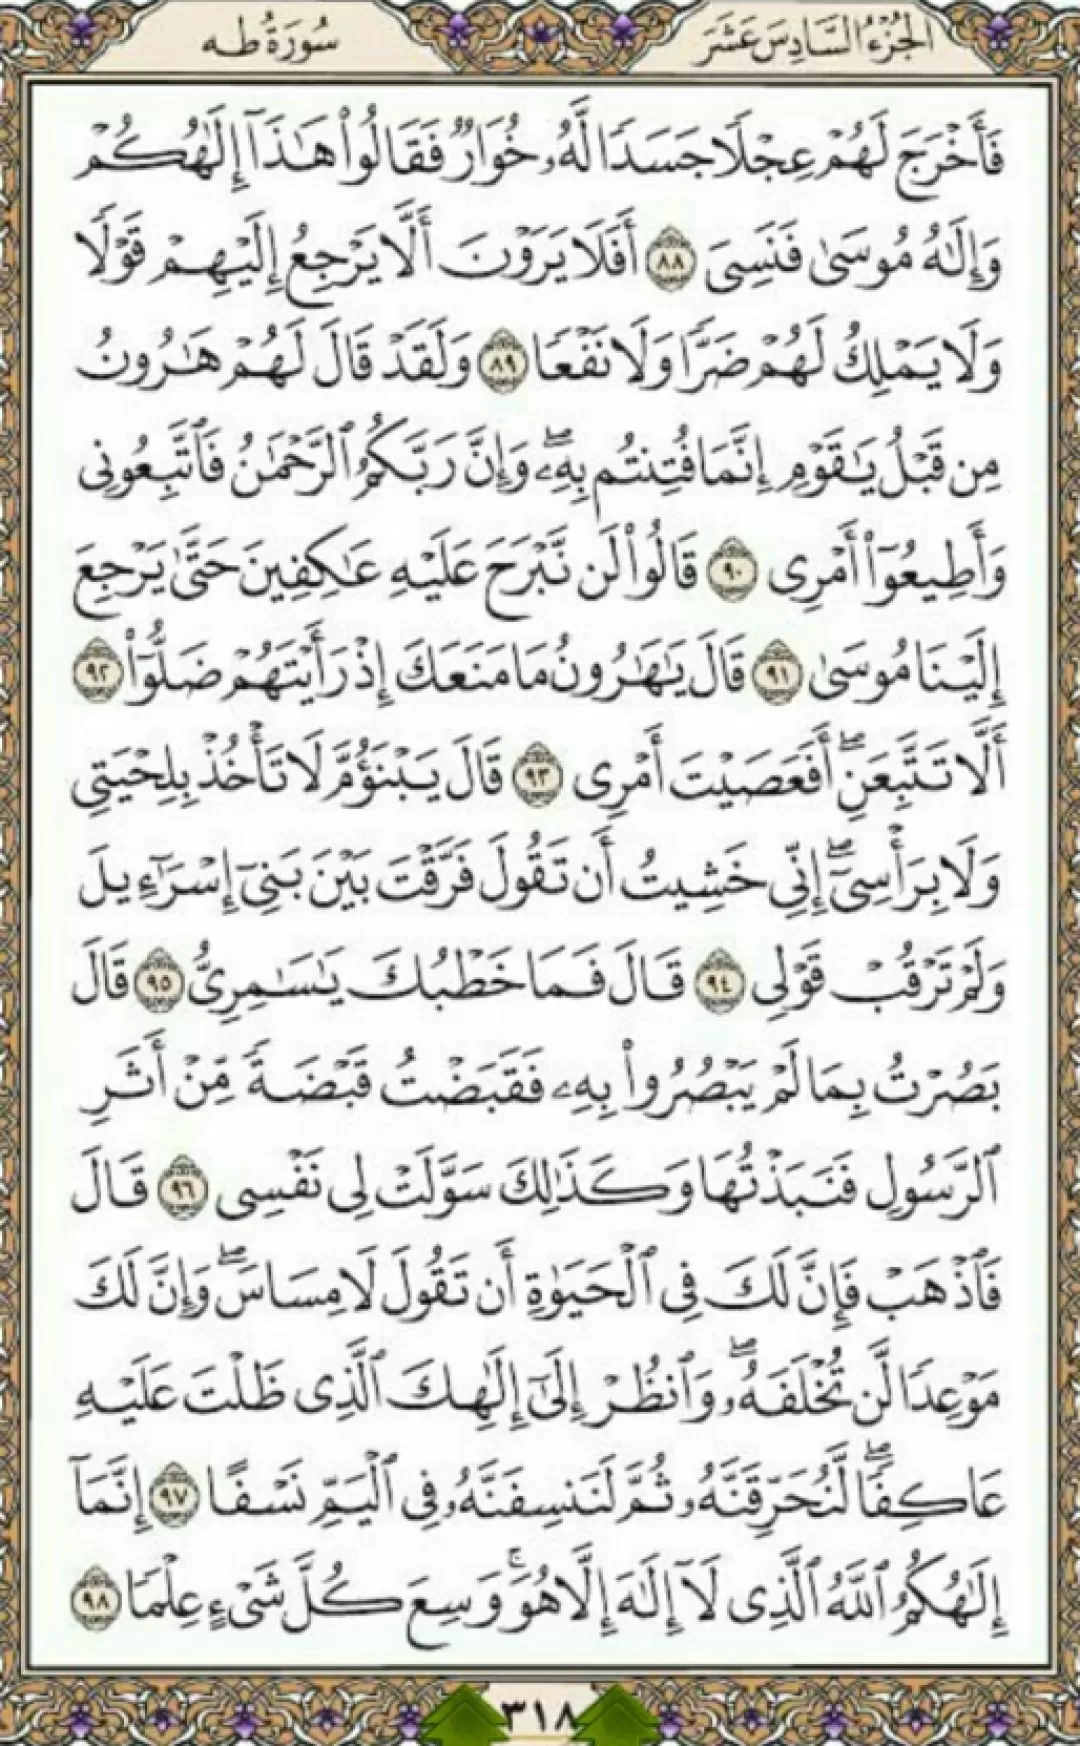 یک صفحه از نسیم نورانی قرآن حکیم